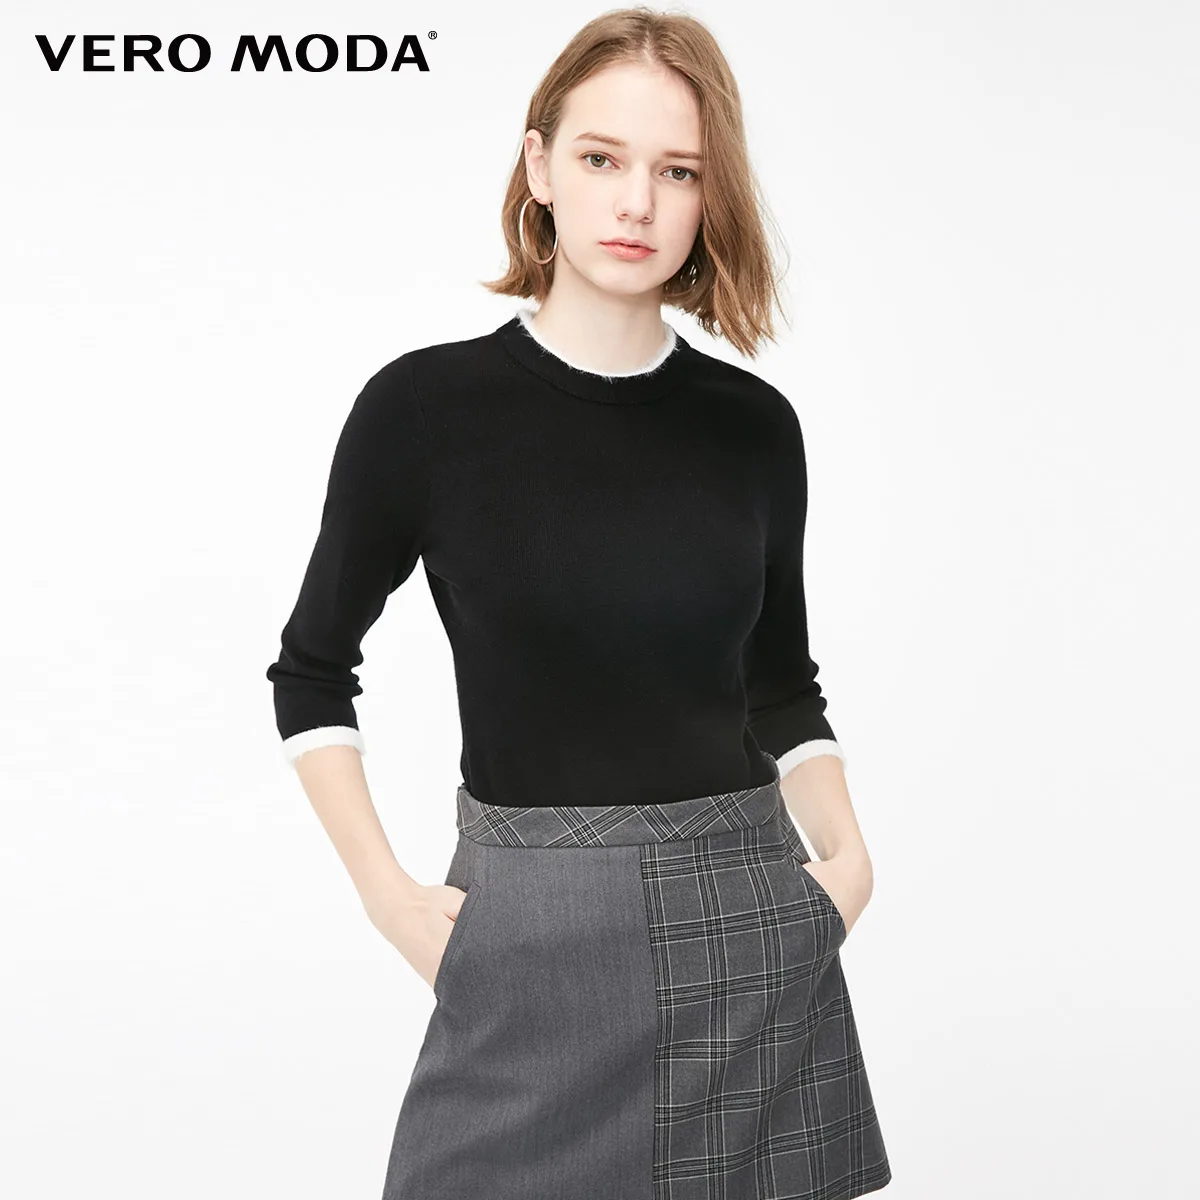 Vero Moda женский круглый вырез минималистичный 3/4 рукава приталенный базовый трикотаж | 319124534 - Цвет: Black